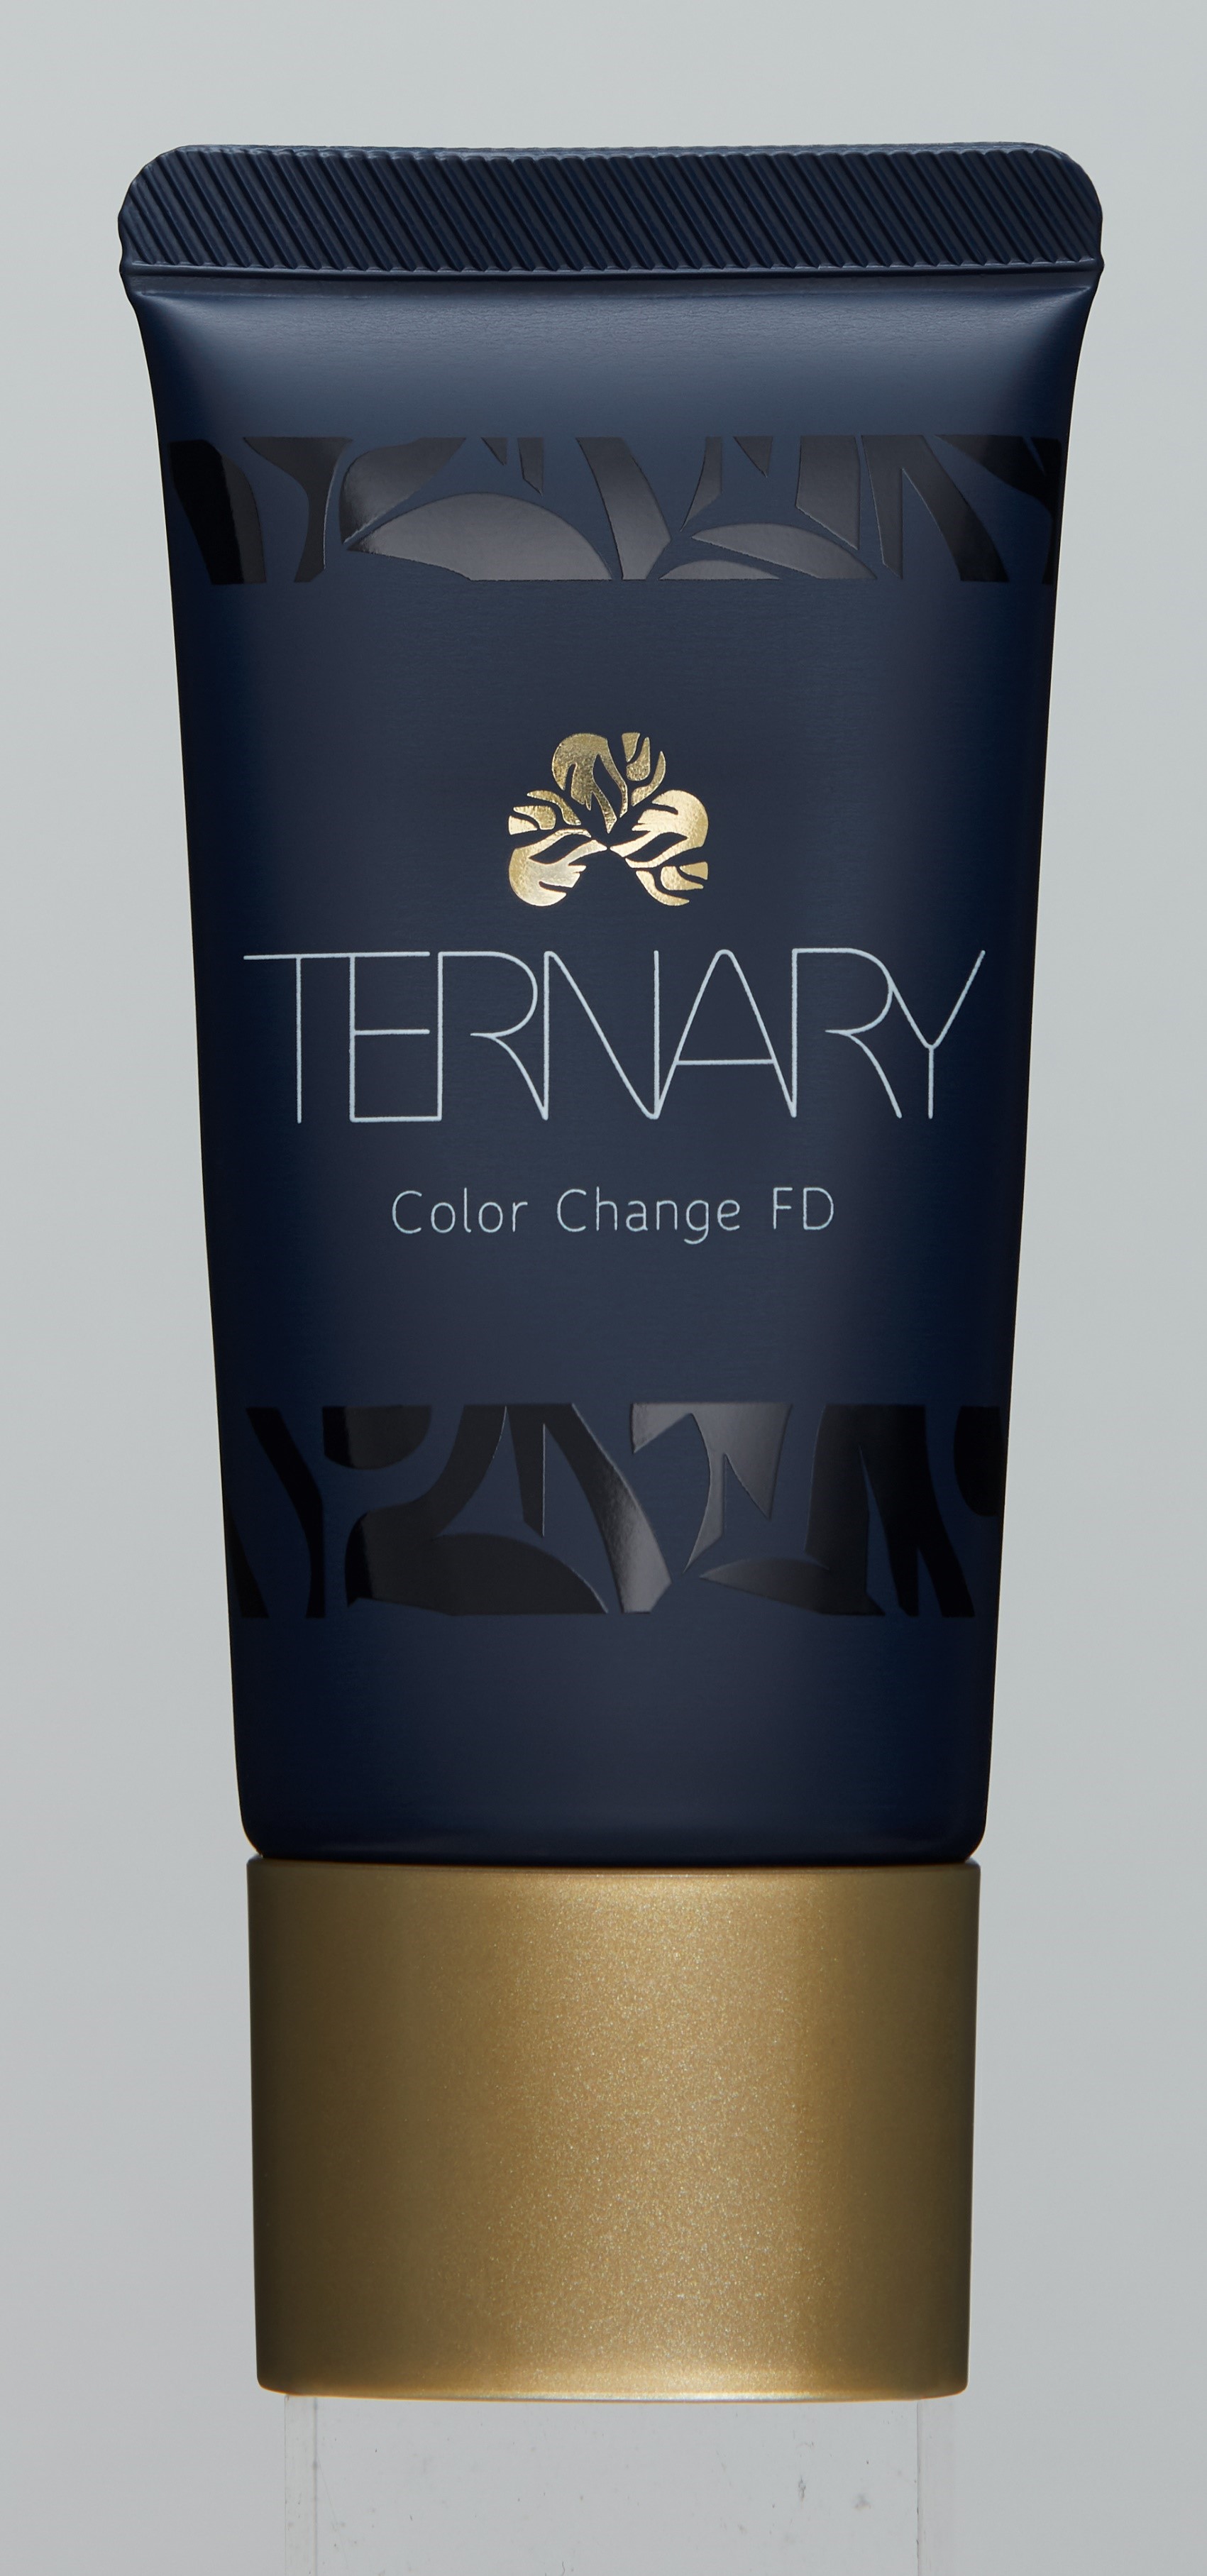 新ブランド Ternary 1色でどんな肌にもなじむ ファンデーション新発売 株式会社 三昧生活のプレスリリース